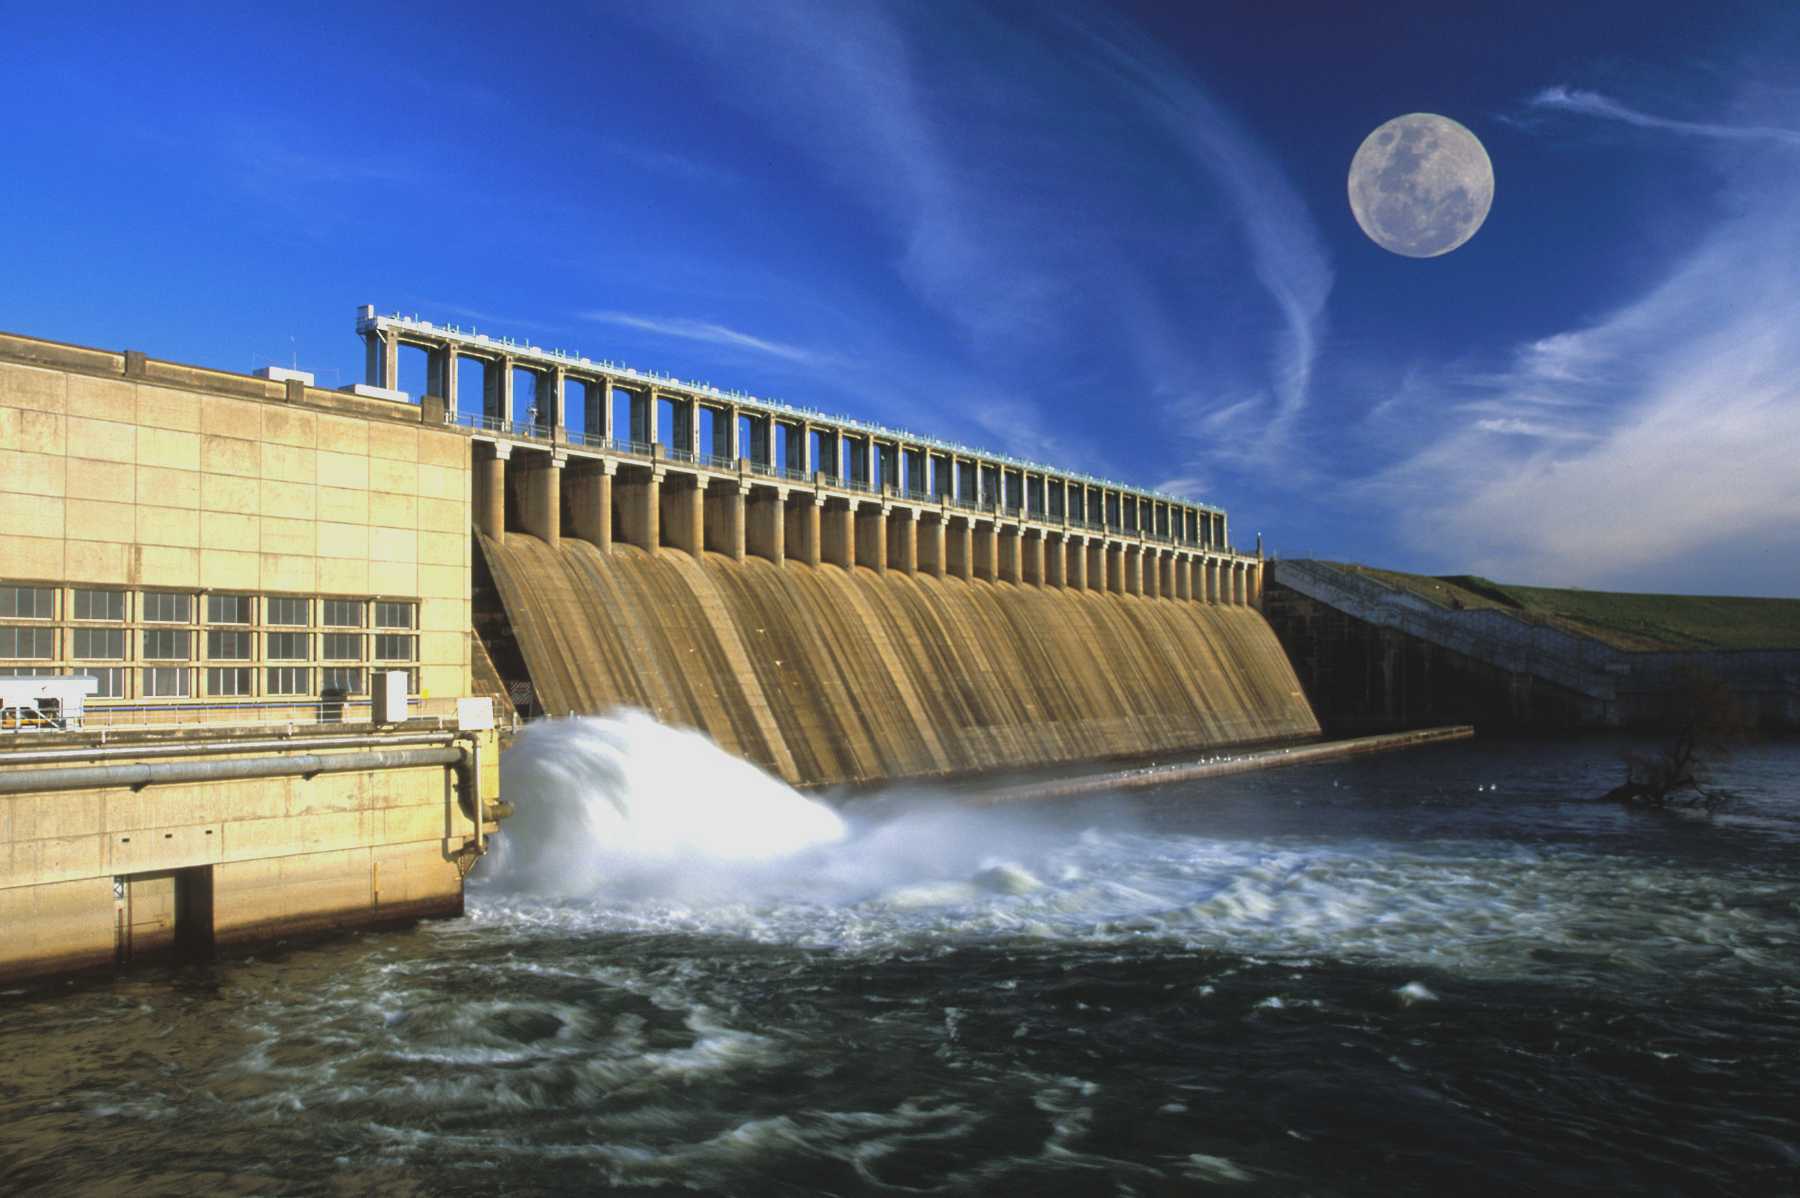 Люди перегородили реку большой плотиной вода выше. Гидроэлектростанция Ириклинская ГЭС. Низконапорные ГЭС. Дамба Верхнесвирской ГЭС. Гидротехника дамба плотина ГЭС.